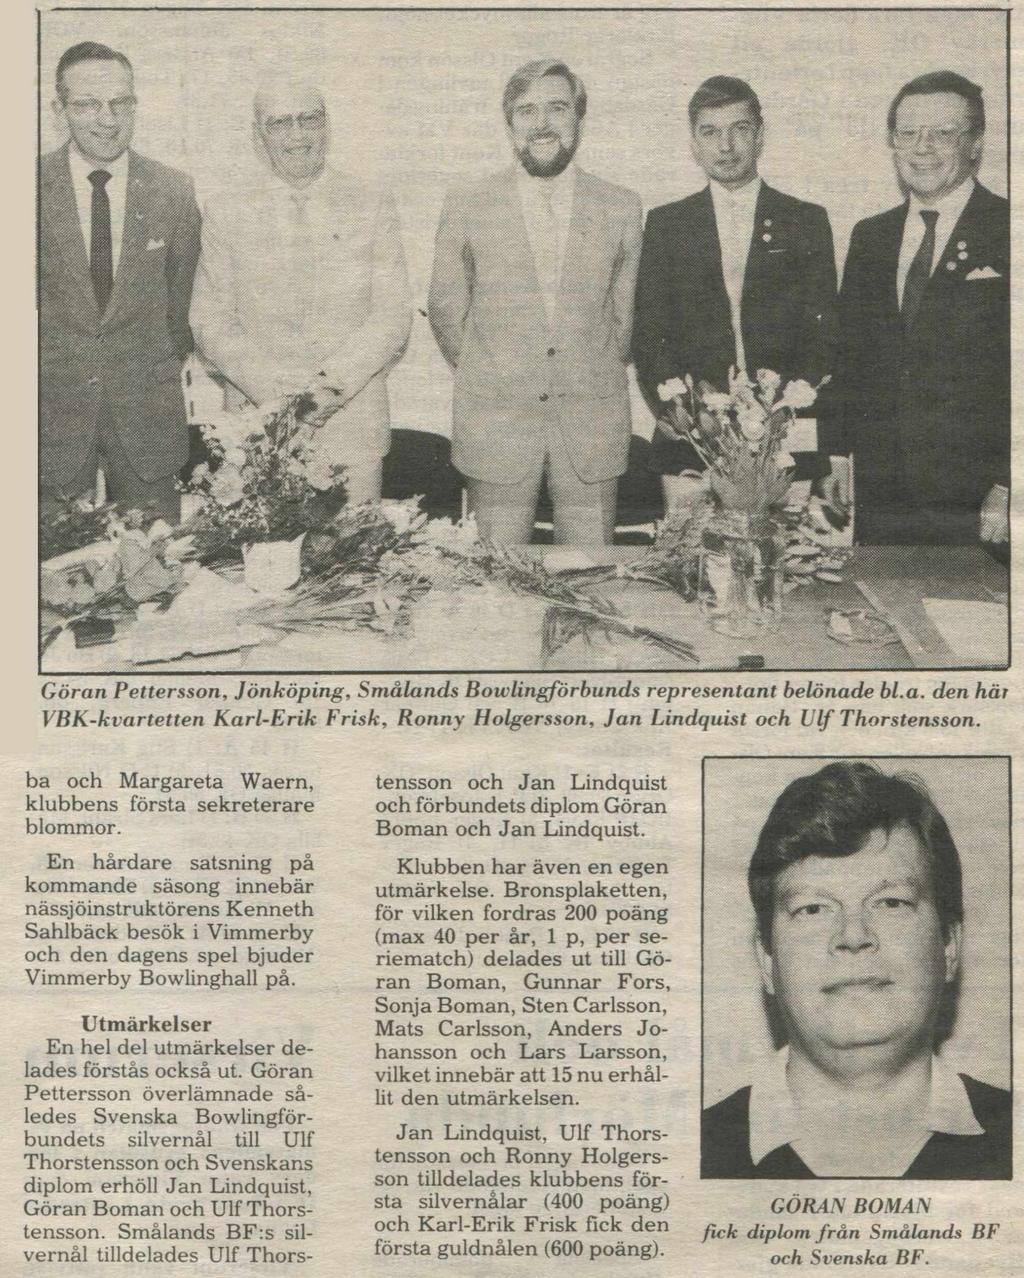 Göran Pettersson, Jönköping, Smålands Bowlingförbunds representant belönade bl.a. den här VBK-kvartetten Karl-Erik Frisk, Ronny Holgersson, Jan Lindquist och Ulf Thorstensson.